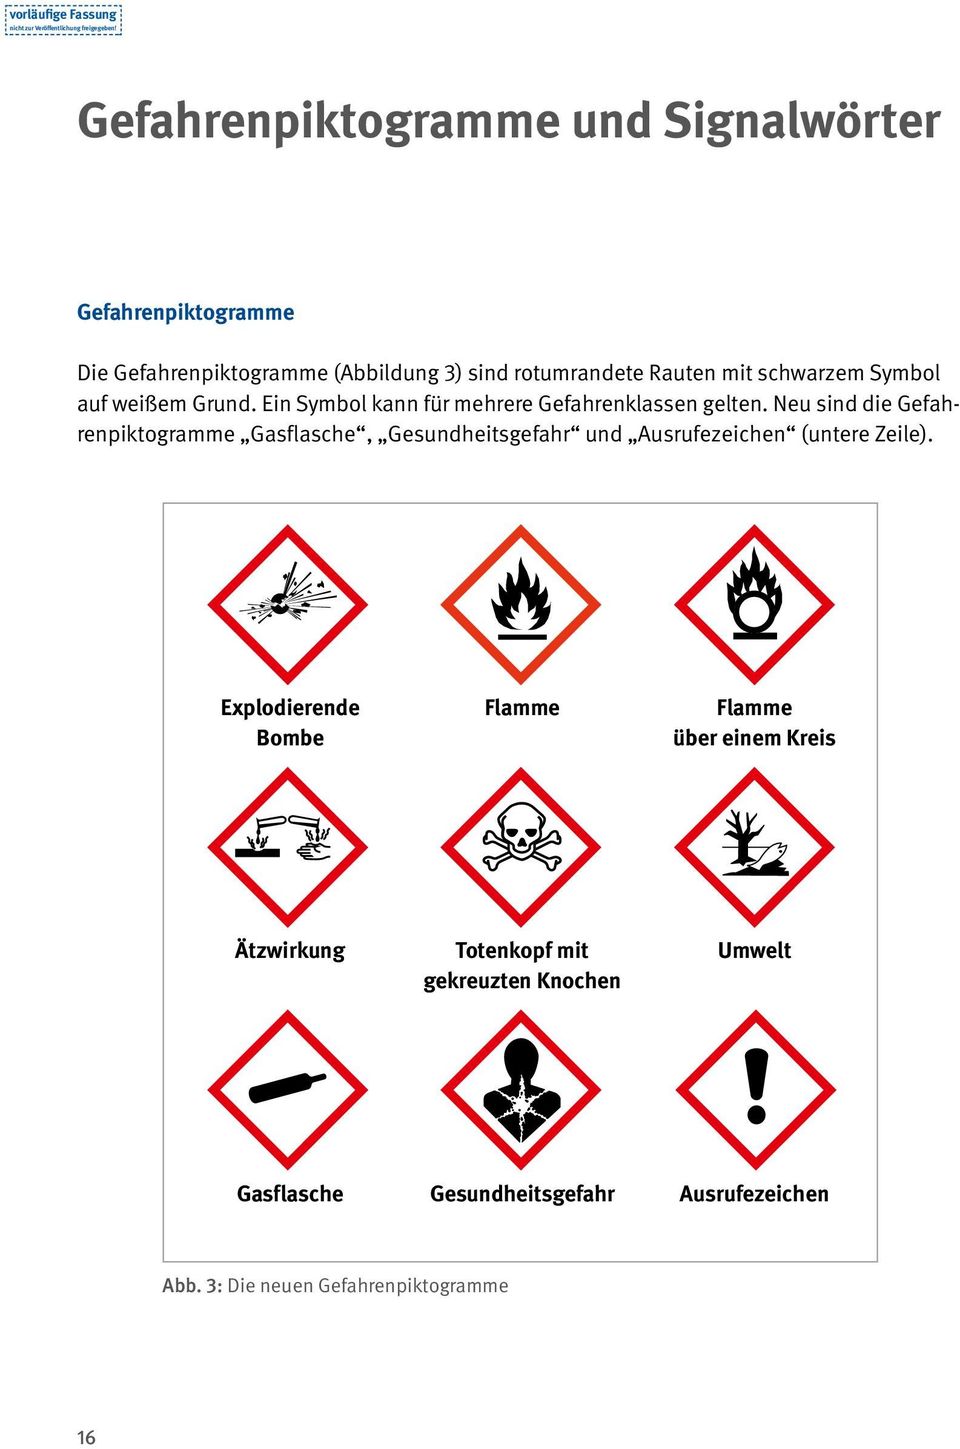 Neu sind die Gefahrenpiktogramme Gasflasche, Gesundheitsgefahr und Ausrufezeichen (untere Zeile).